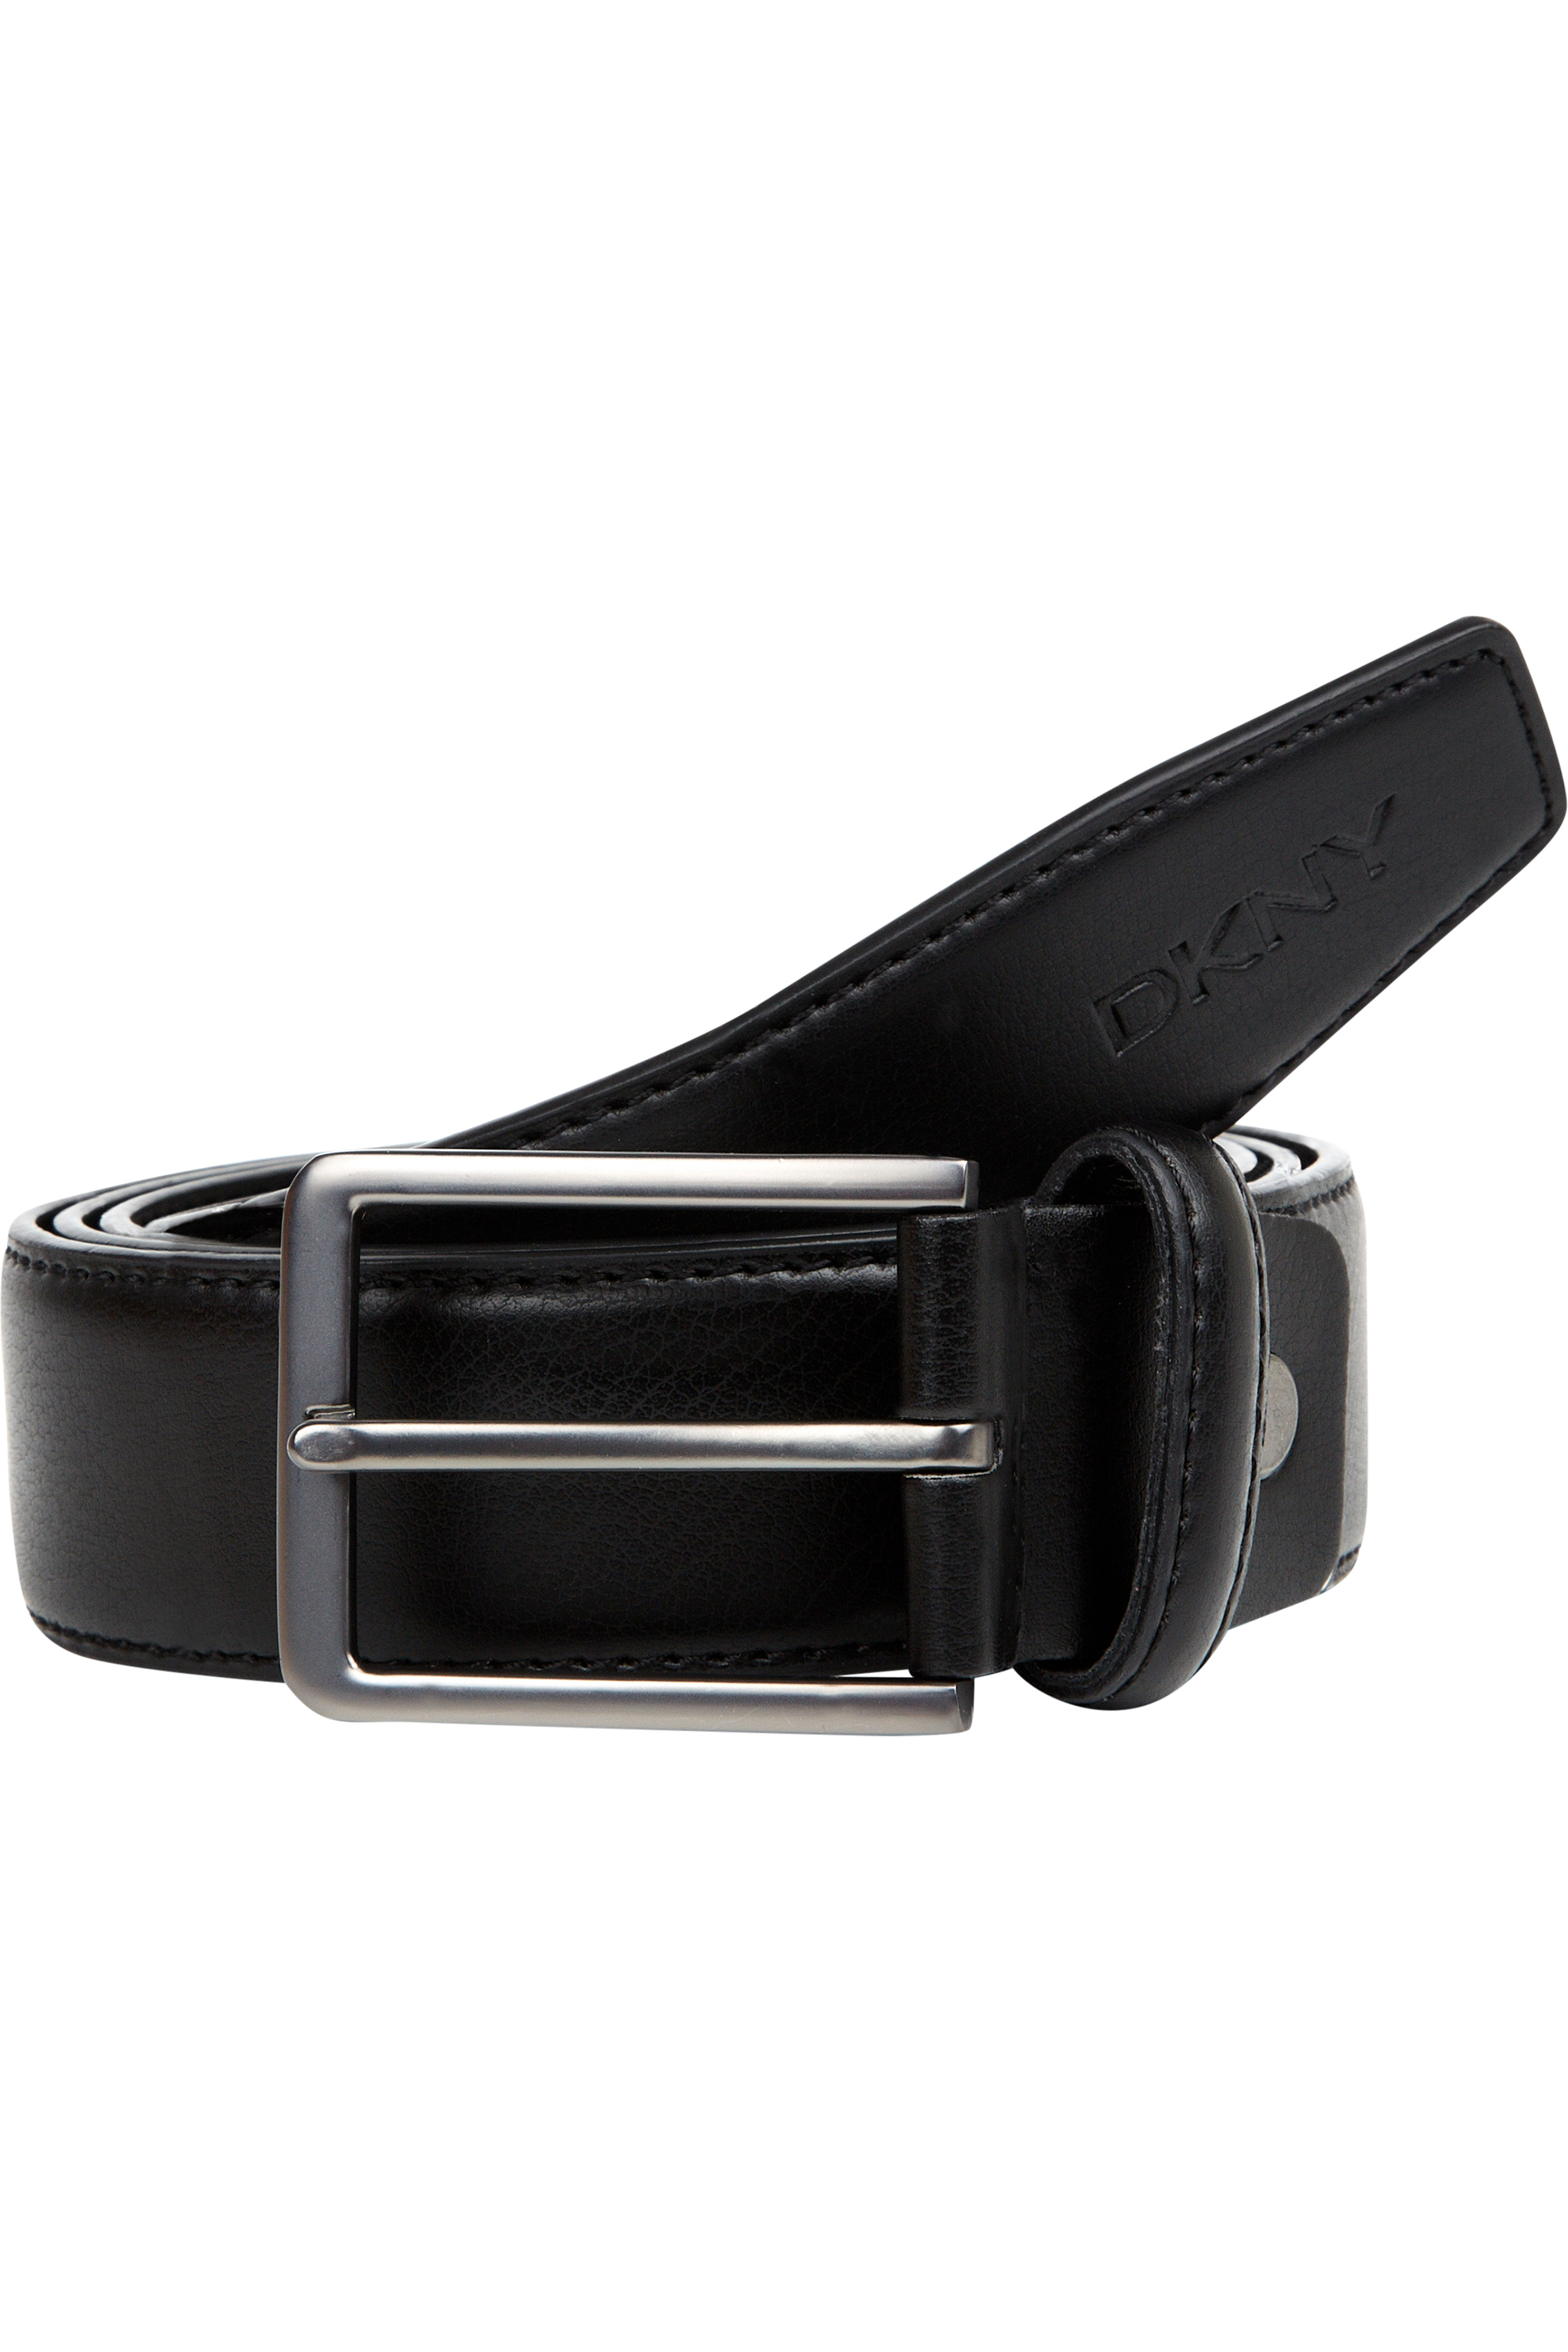 Dkny Black Wallet And Belt Gift Set in Black for Men | Lyst